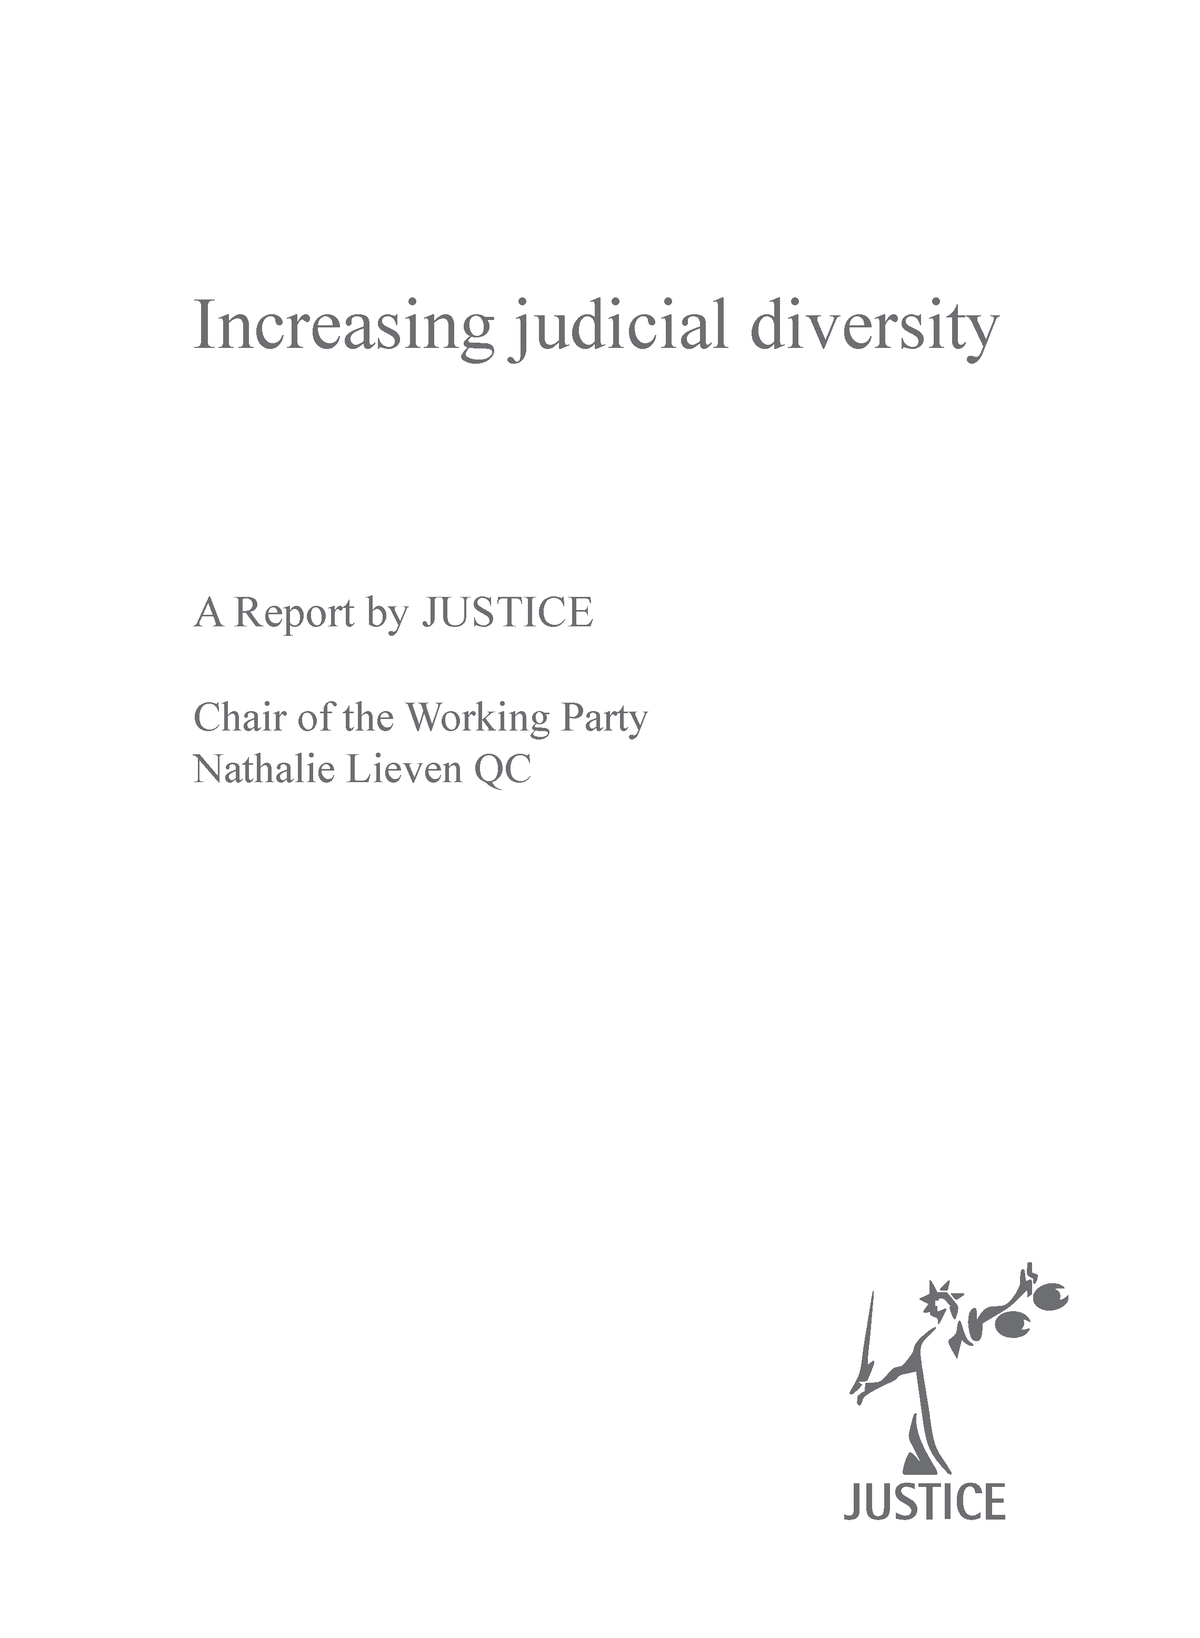 judicial diversity uk essay